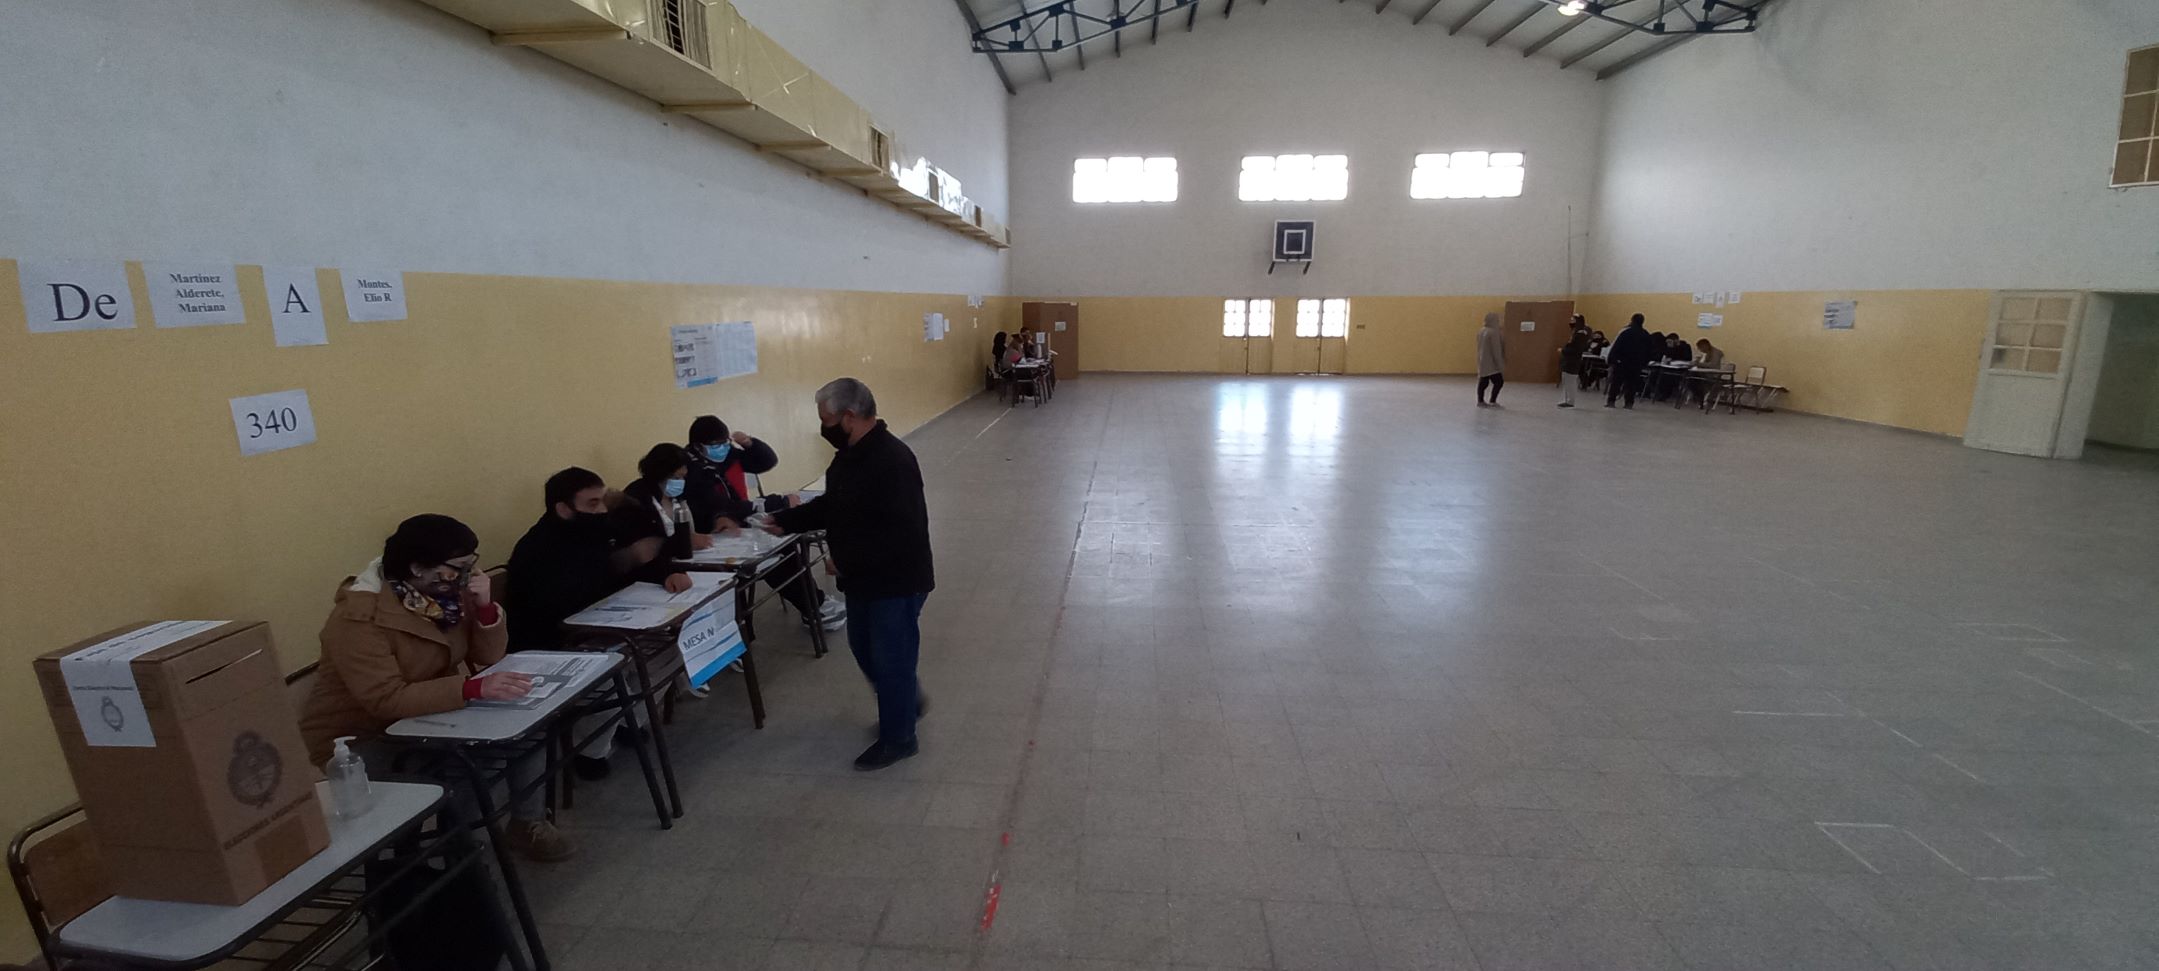 Una escasa concurrencia a votar se nota durante la mañana en Jacobacci. Foto: José Mellado. 